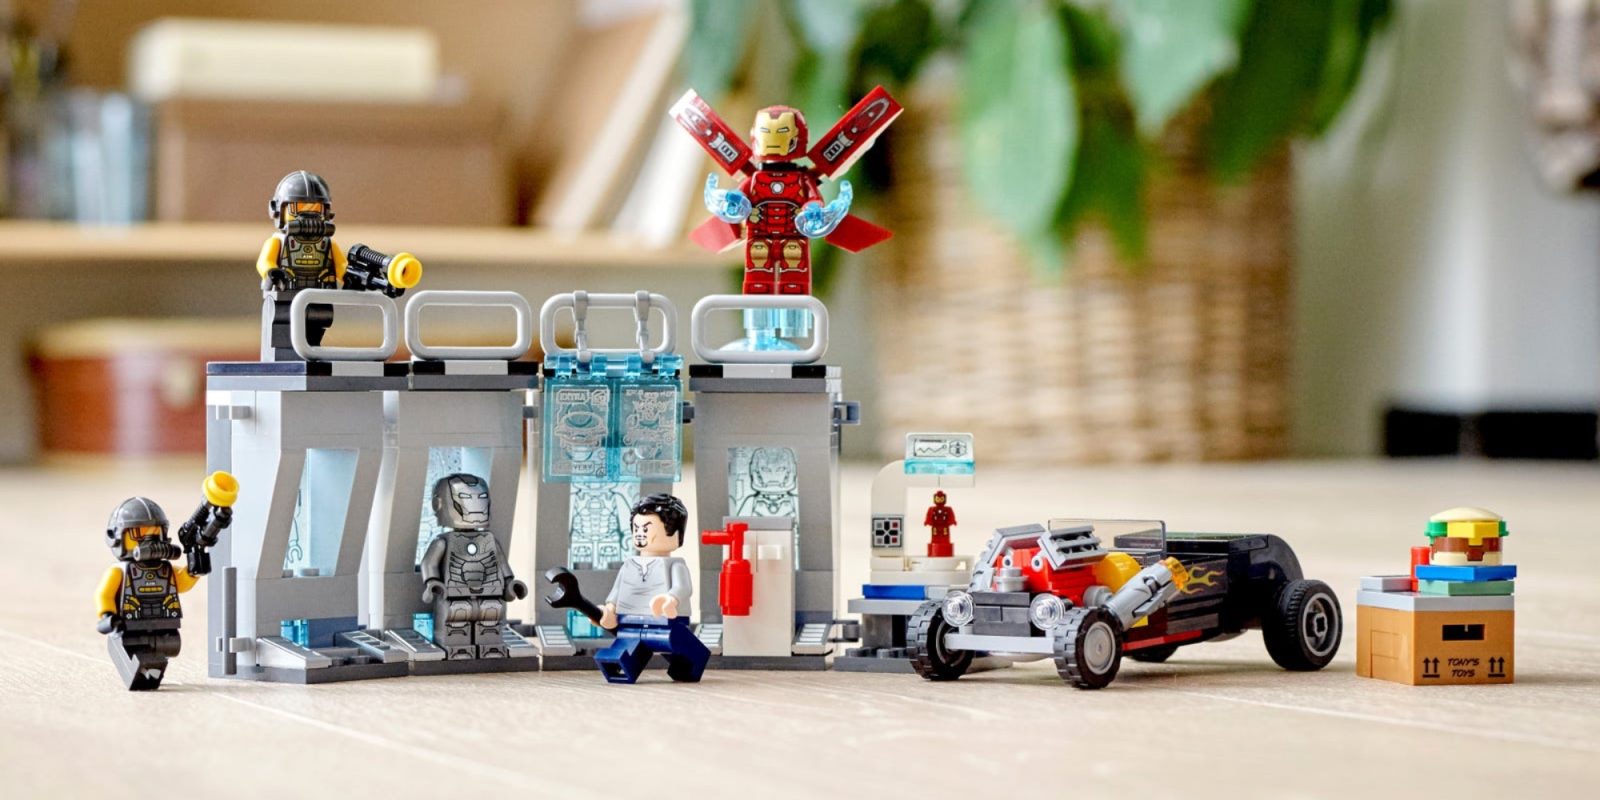 LEGO Iron Man Armory debuts as latest Avengers set - 9to5Toys